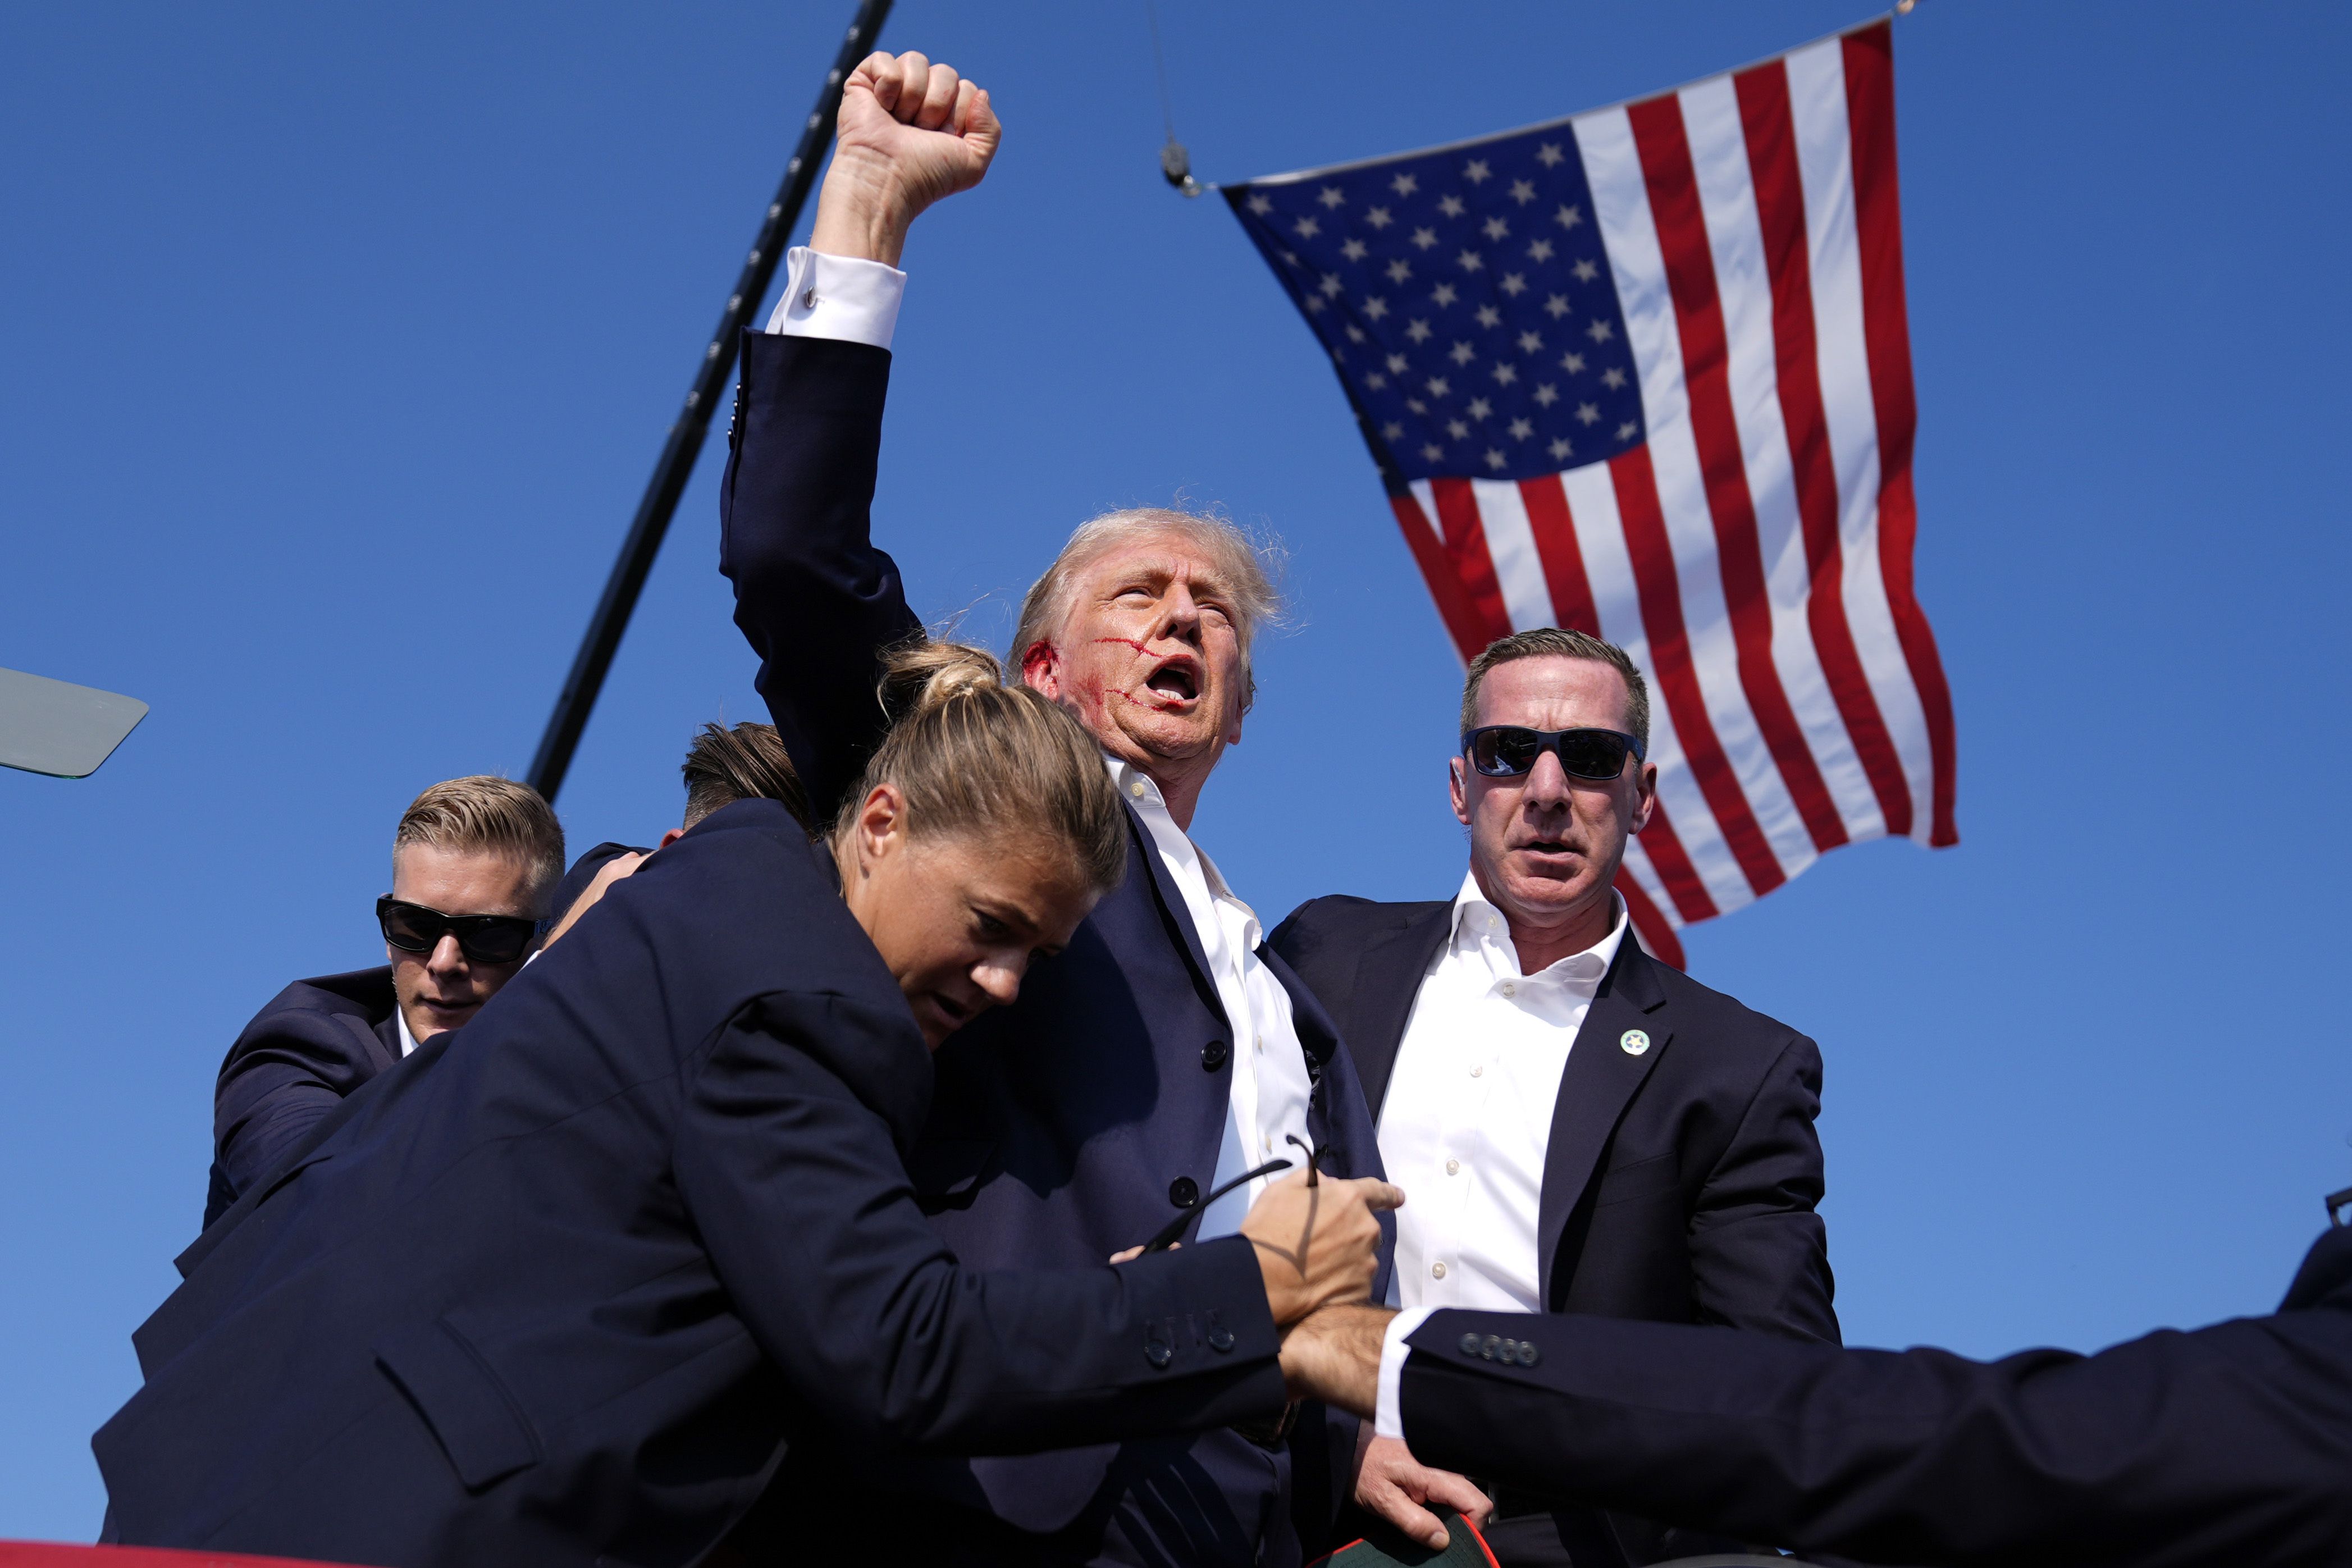 El candidato presidencial republicano, Donald Trump rodeado por Agentes del Servicio Secreto de Estados Unidos en el escenario durante un mitin de campaña. [Fotografía. AP/Evan Vucci]